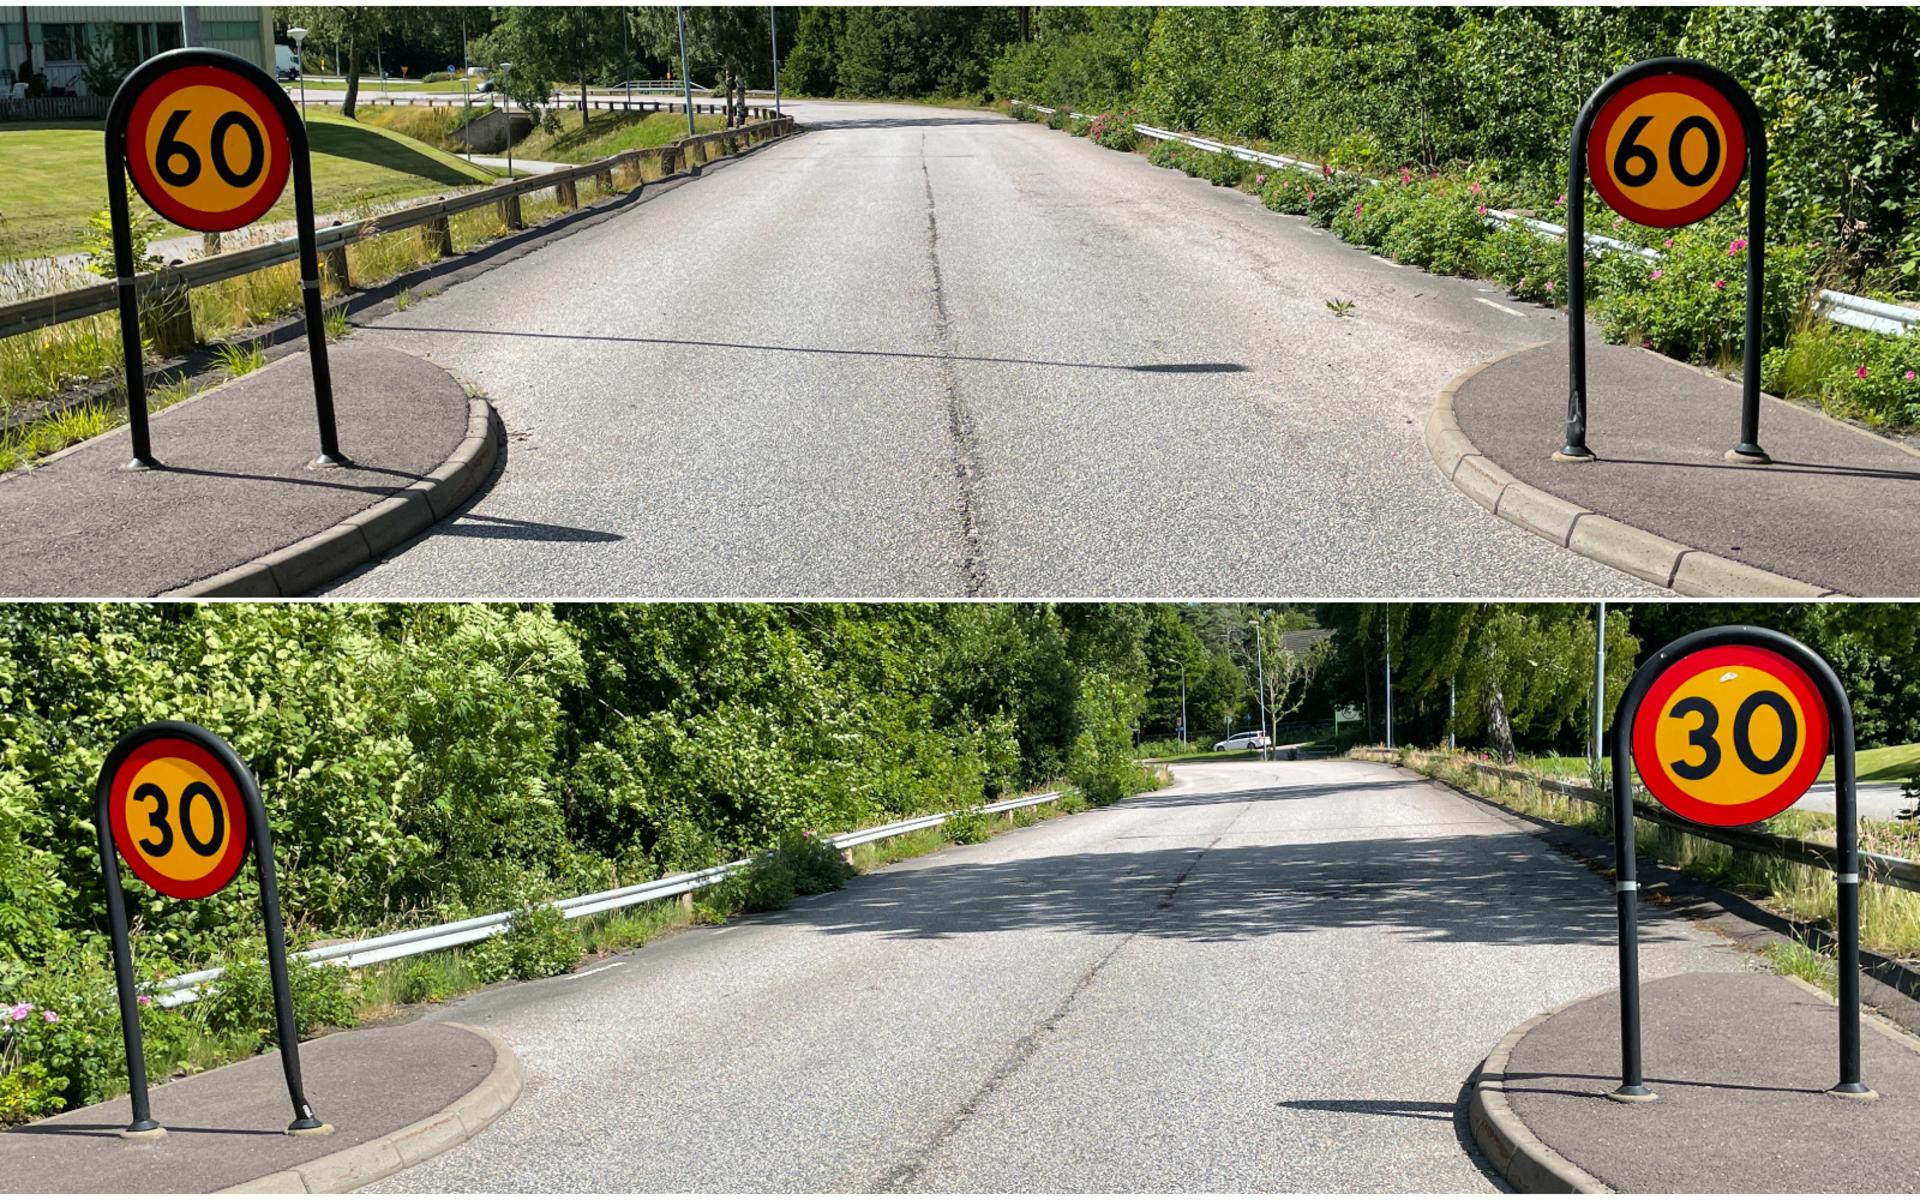 Nuvarande trafikföreskrifter gör att det både är 60 km/h samt 30 km/h på en kortare sträcka när Slättenvägen går i i Furuskog.